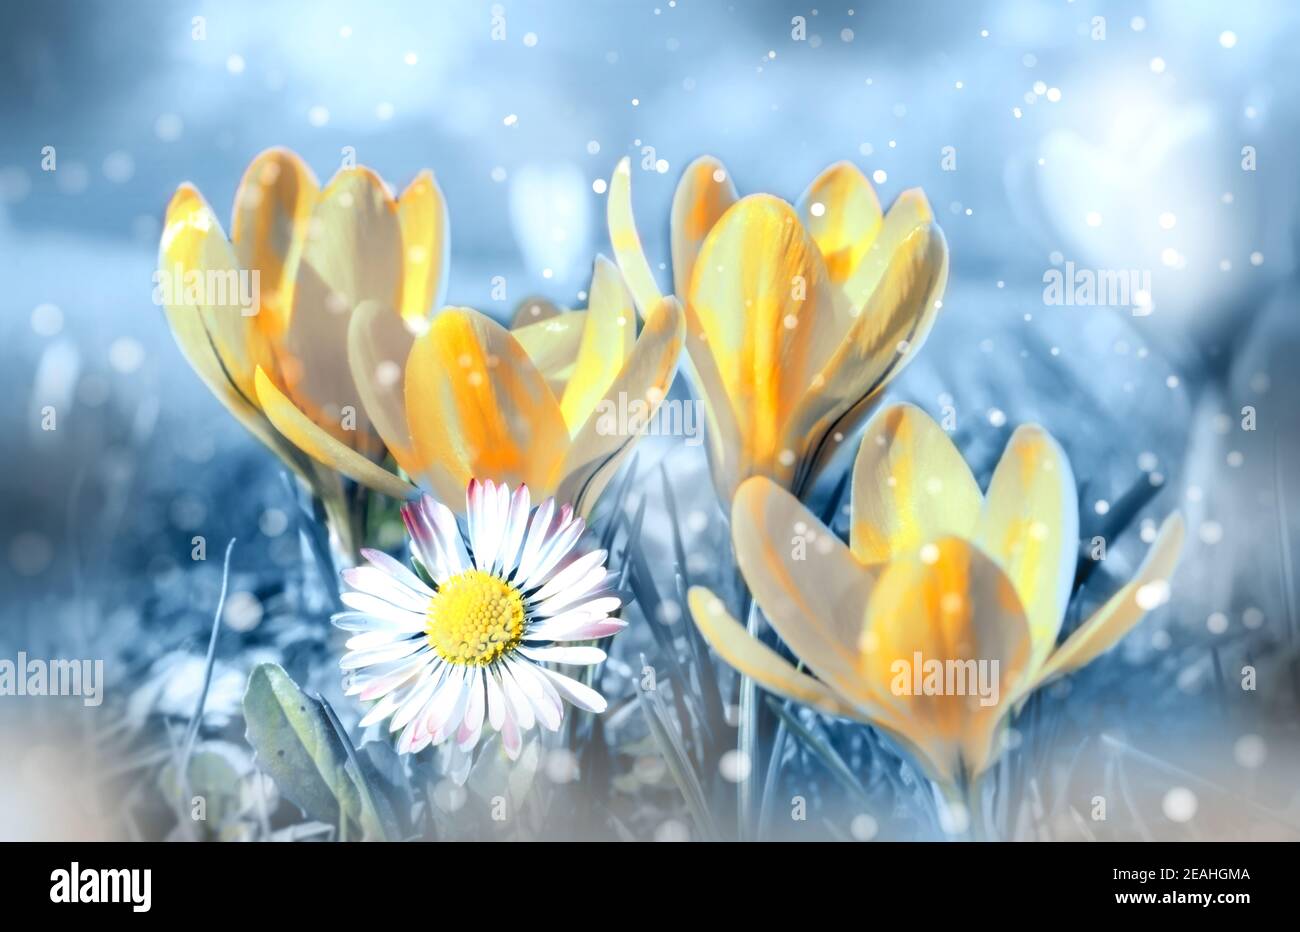 Belles fleurs printanières dans la prairie rêveuse, teintes de pastel jaune et bleu. Image artistique romantique rêveuse du printemps Banque D'Images